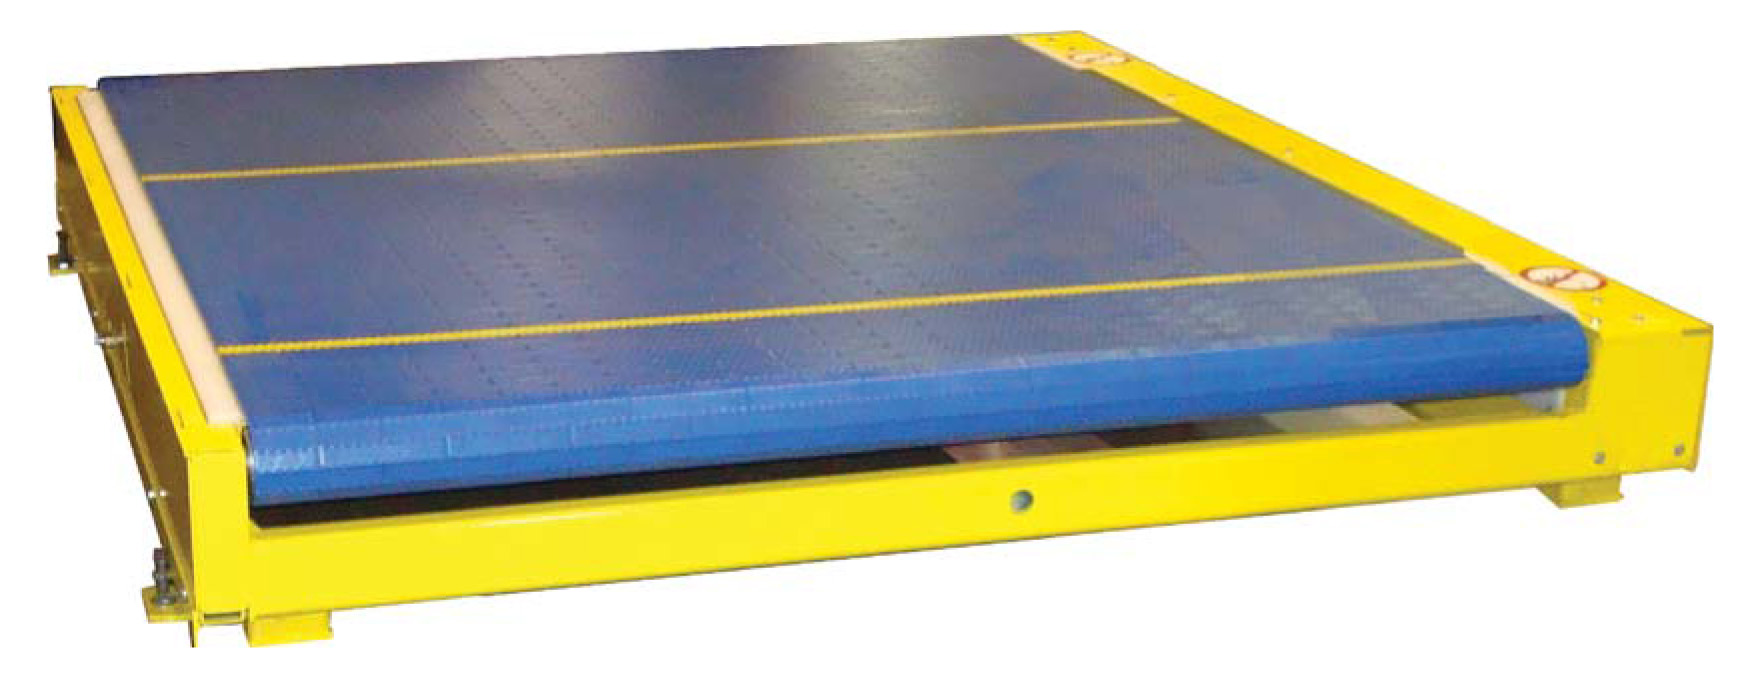 Pozi-Link™ Conveyor (PLZ) Flat Conveyor